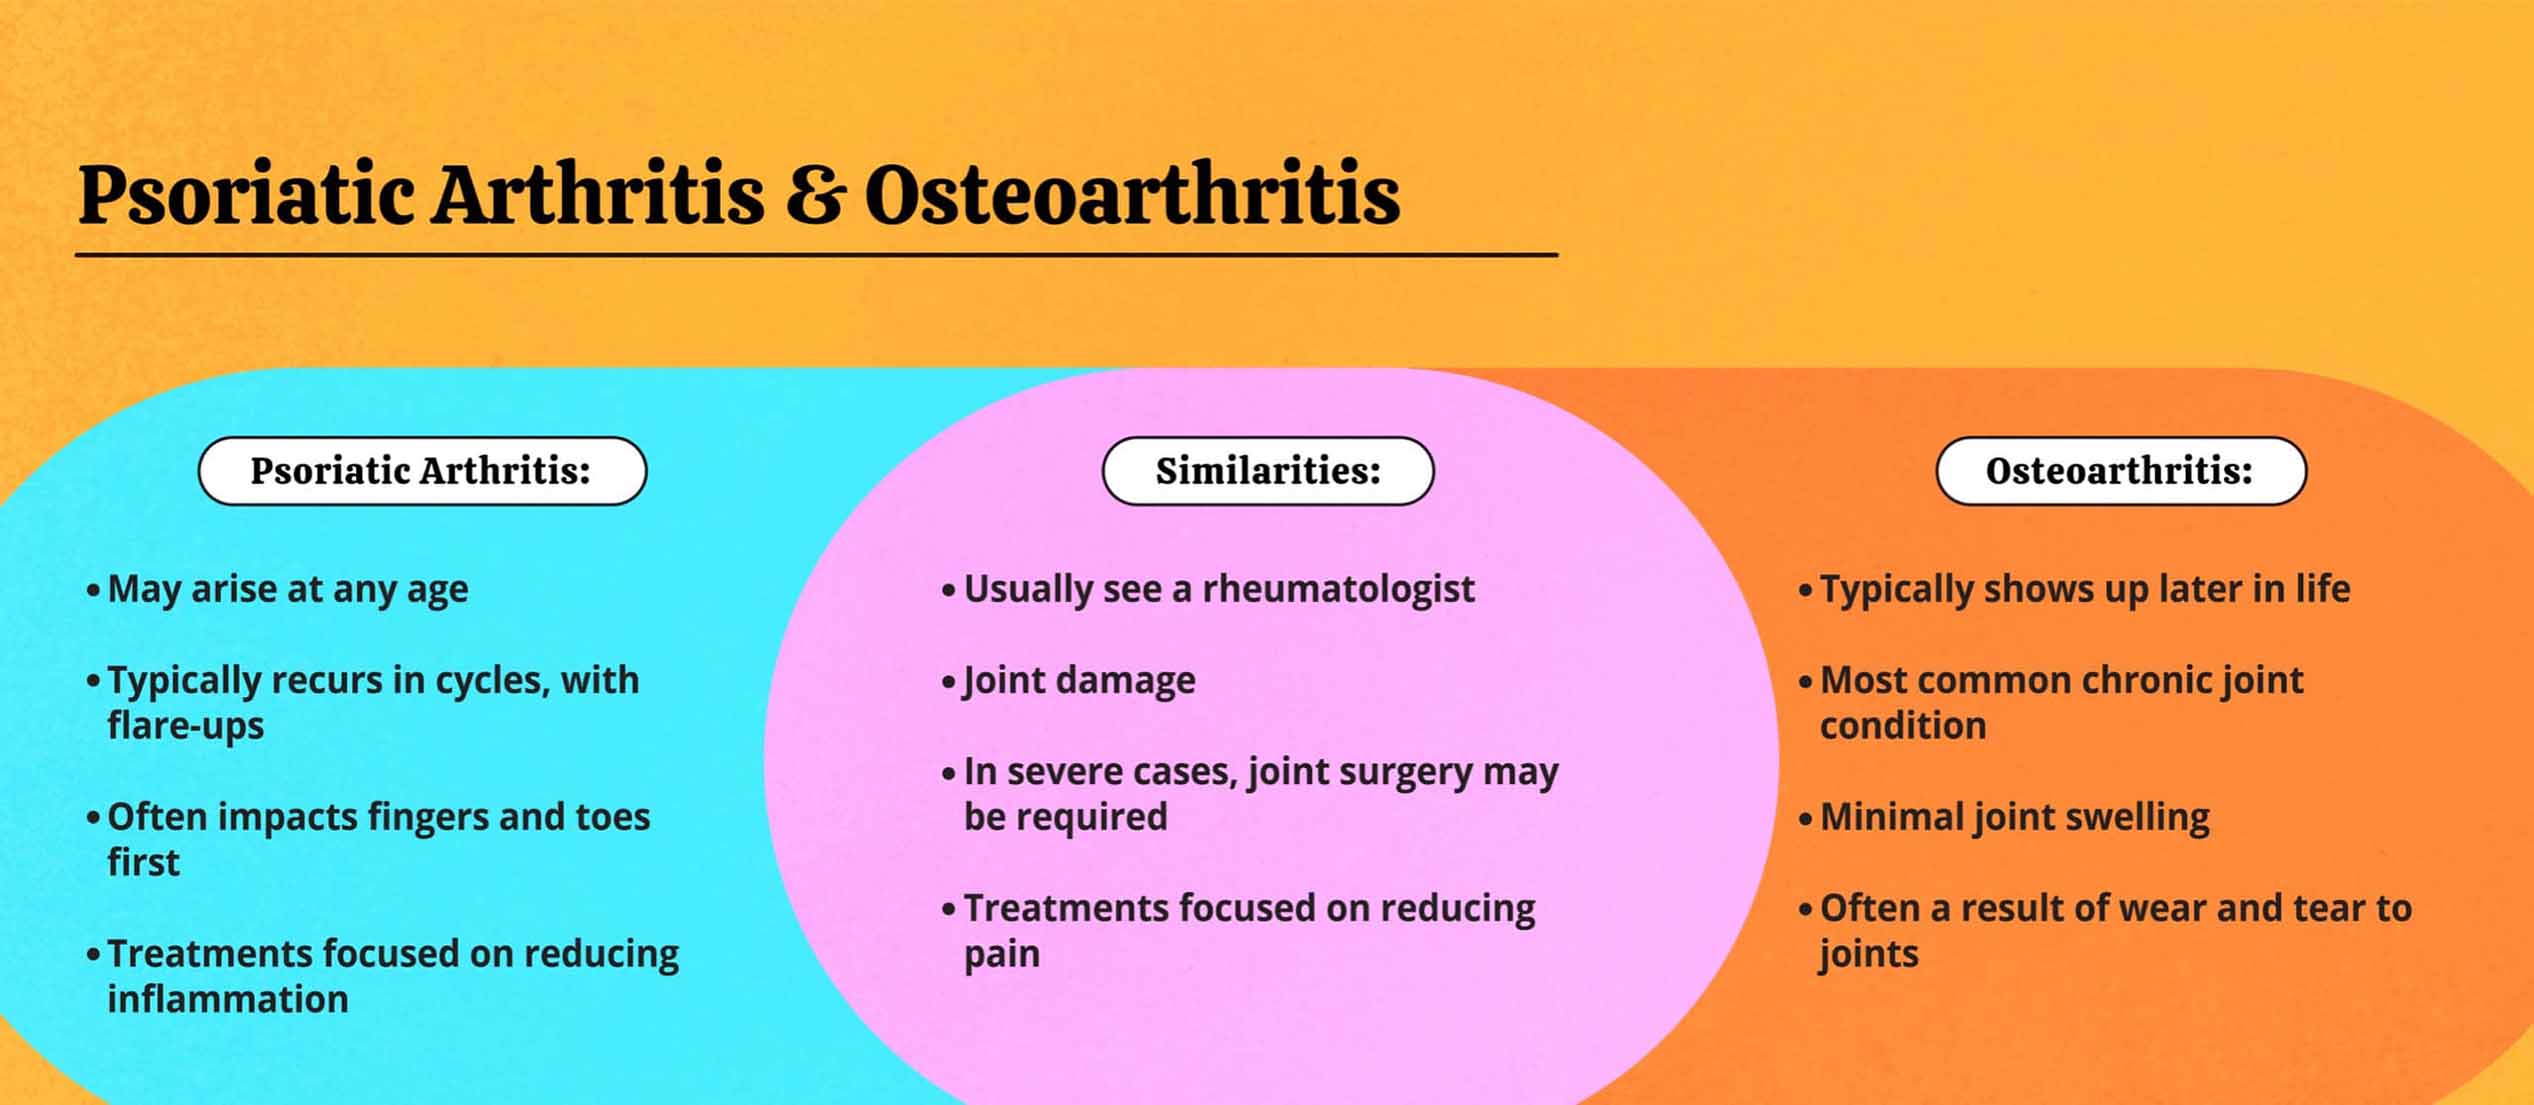 PsA & osteoarthritis